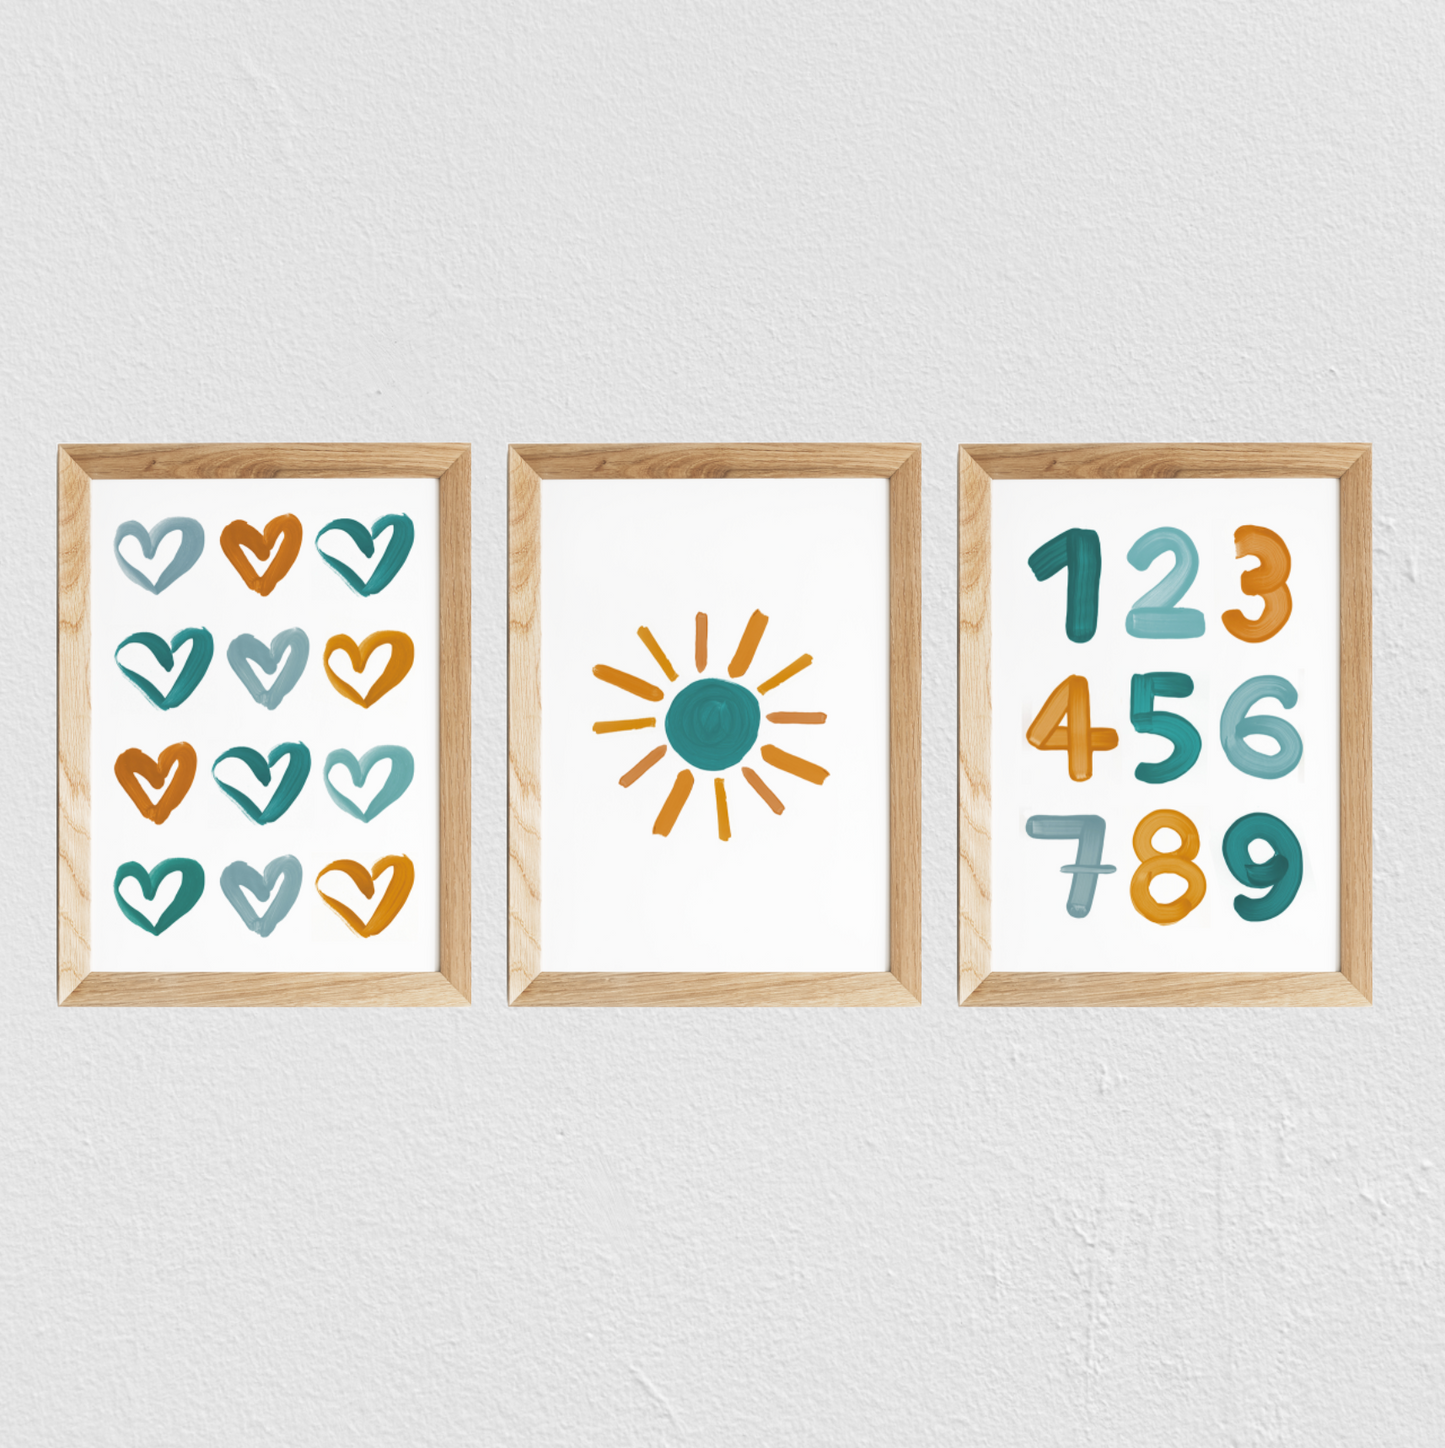 Poster chambre bébé / enfant ‘soleil’ moutarde et bleu canard - SEVEN PAPER